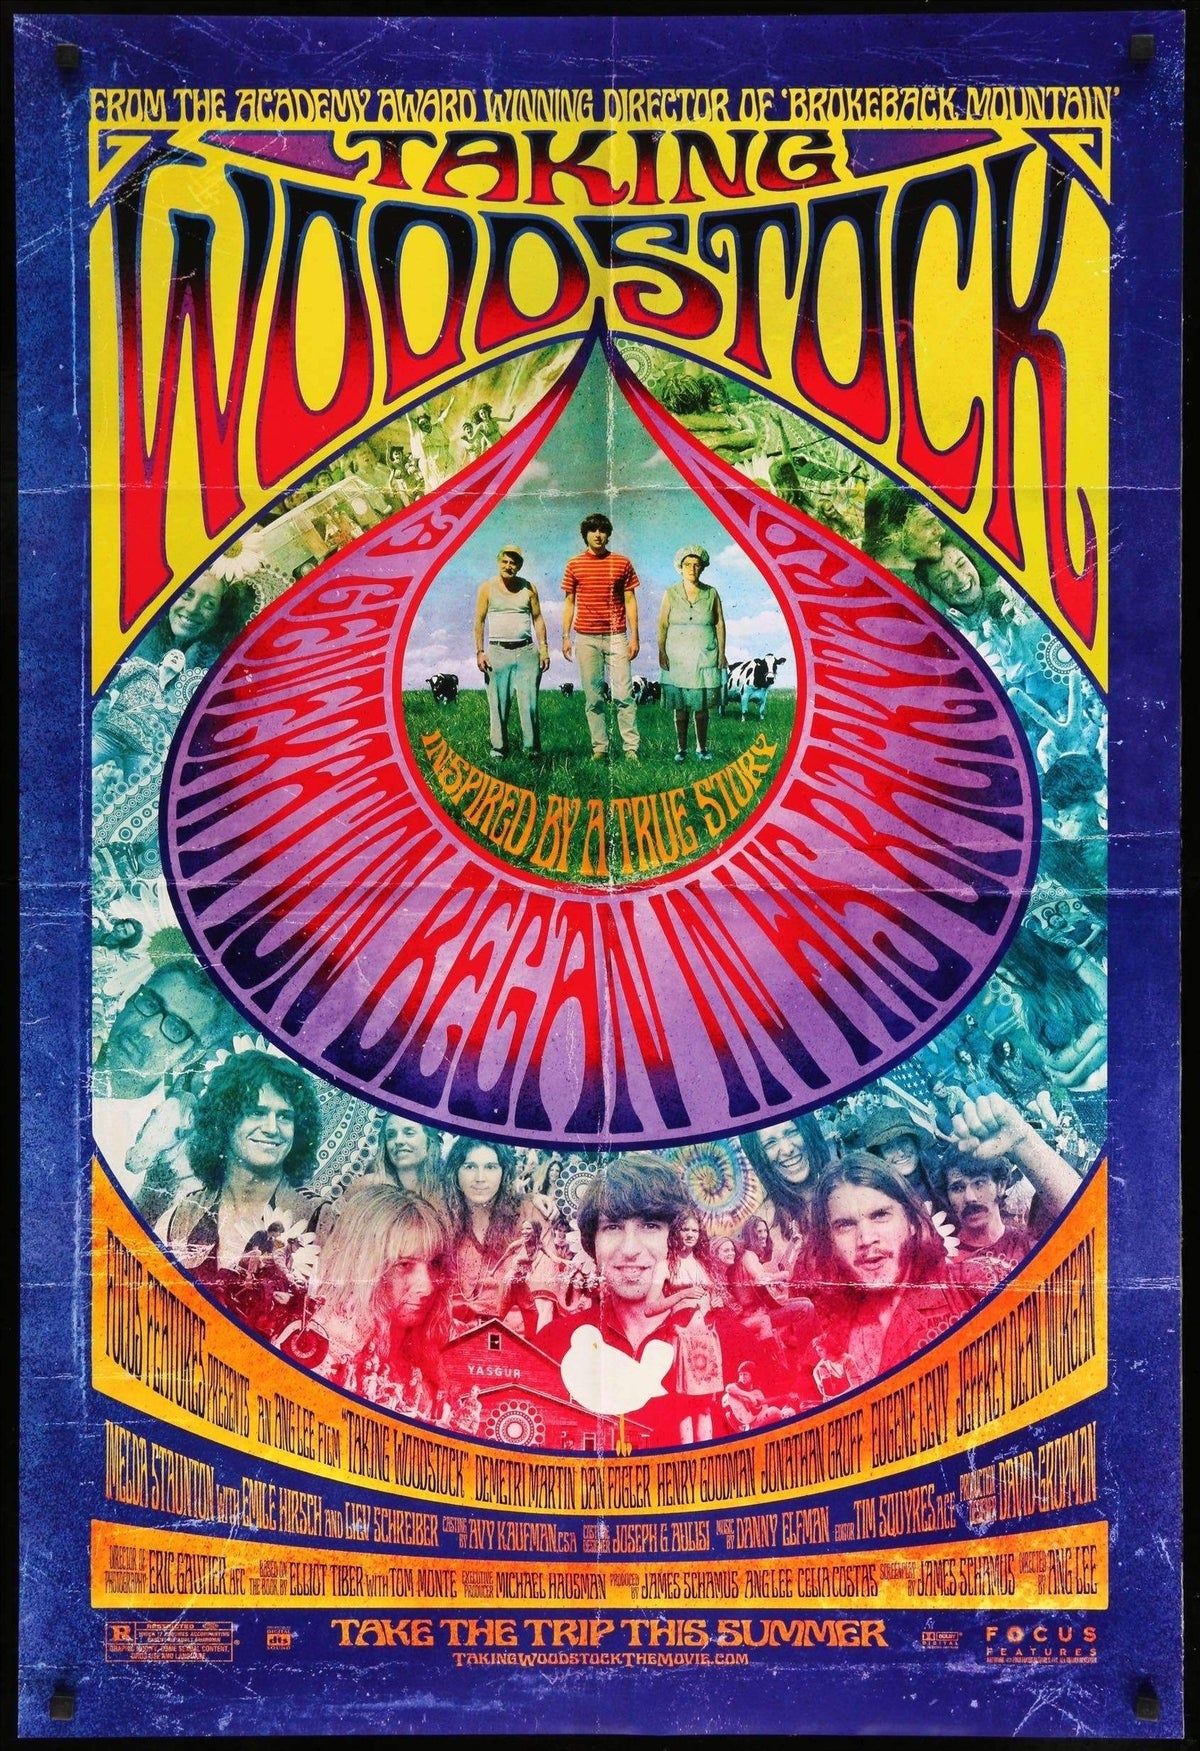 Taking Woodstock (2009) original movie poster for sale at Original Film Art